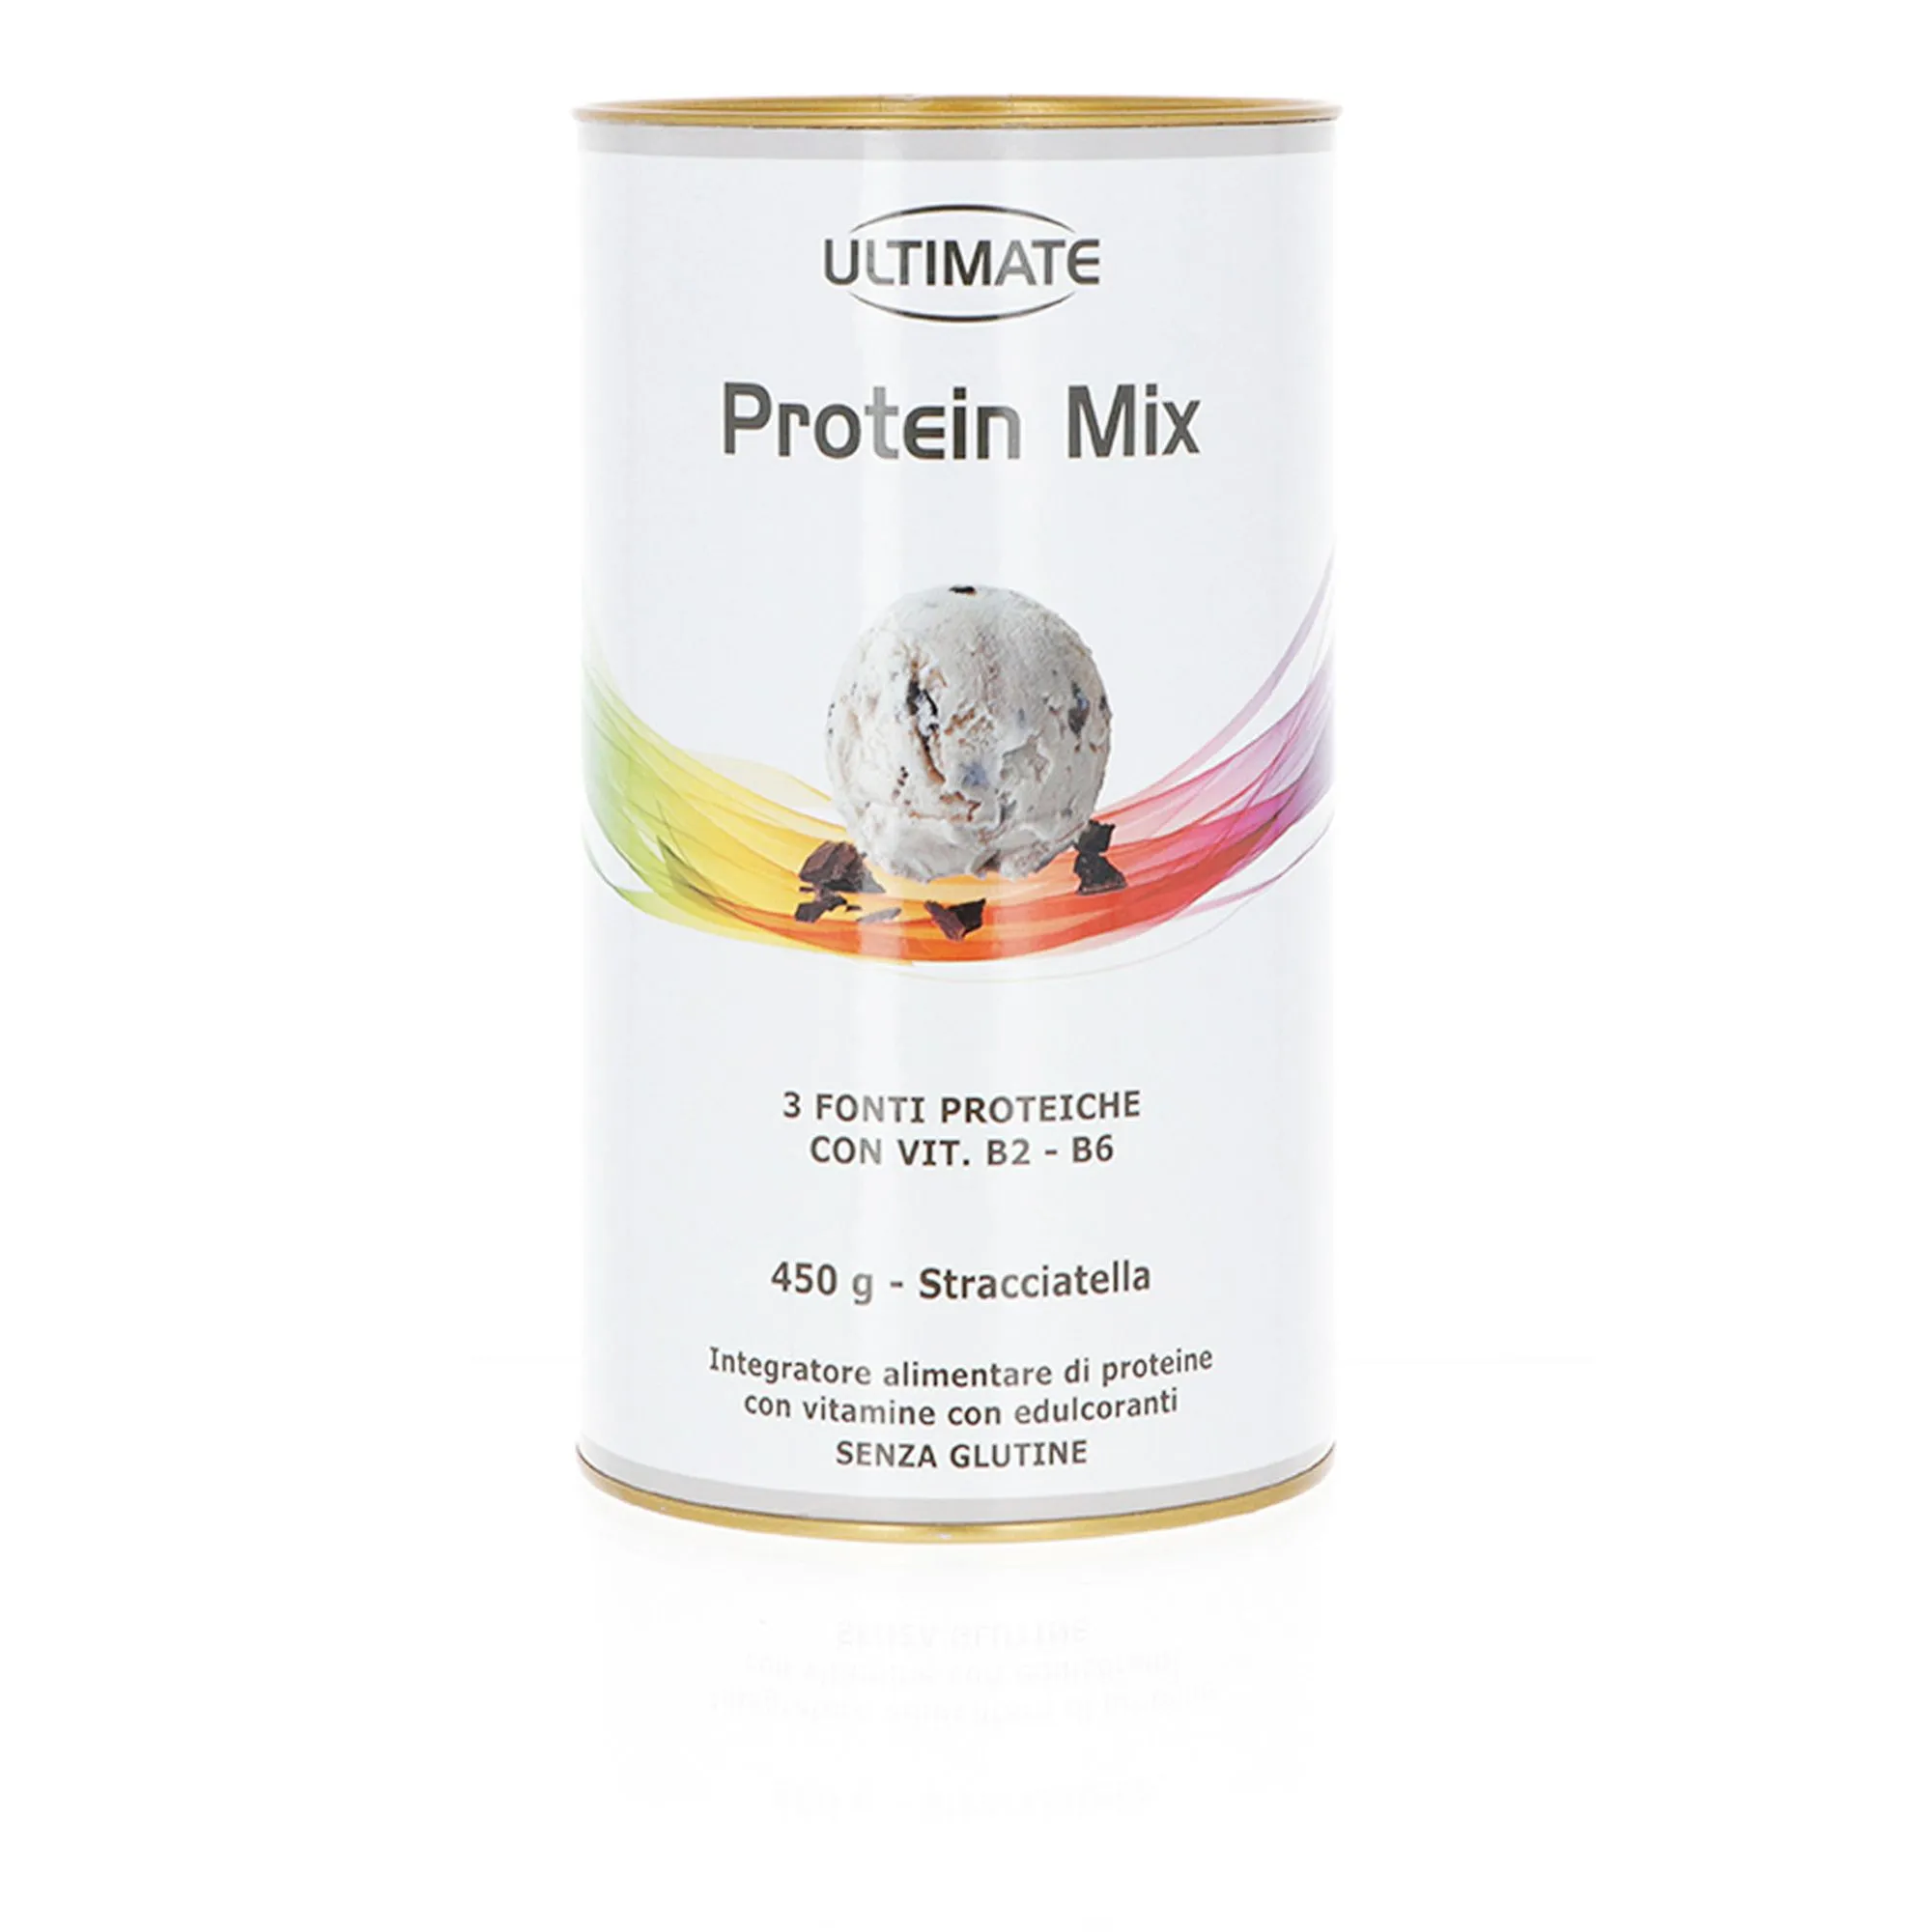 Protein Mix Integratore alimentare di proteine